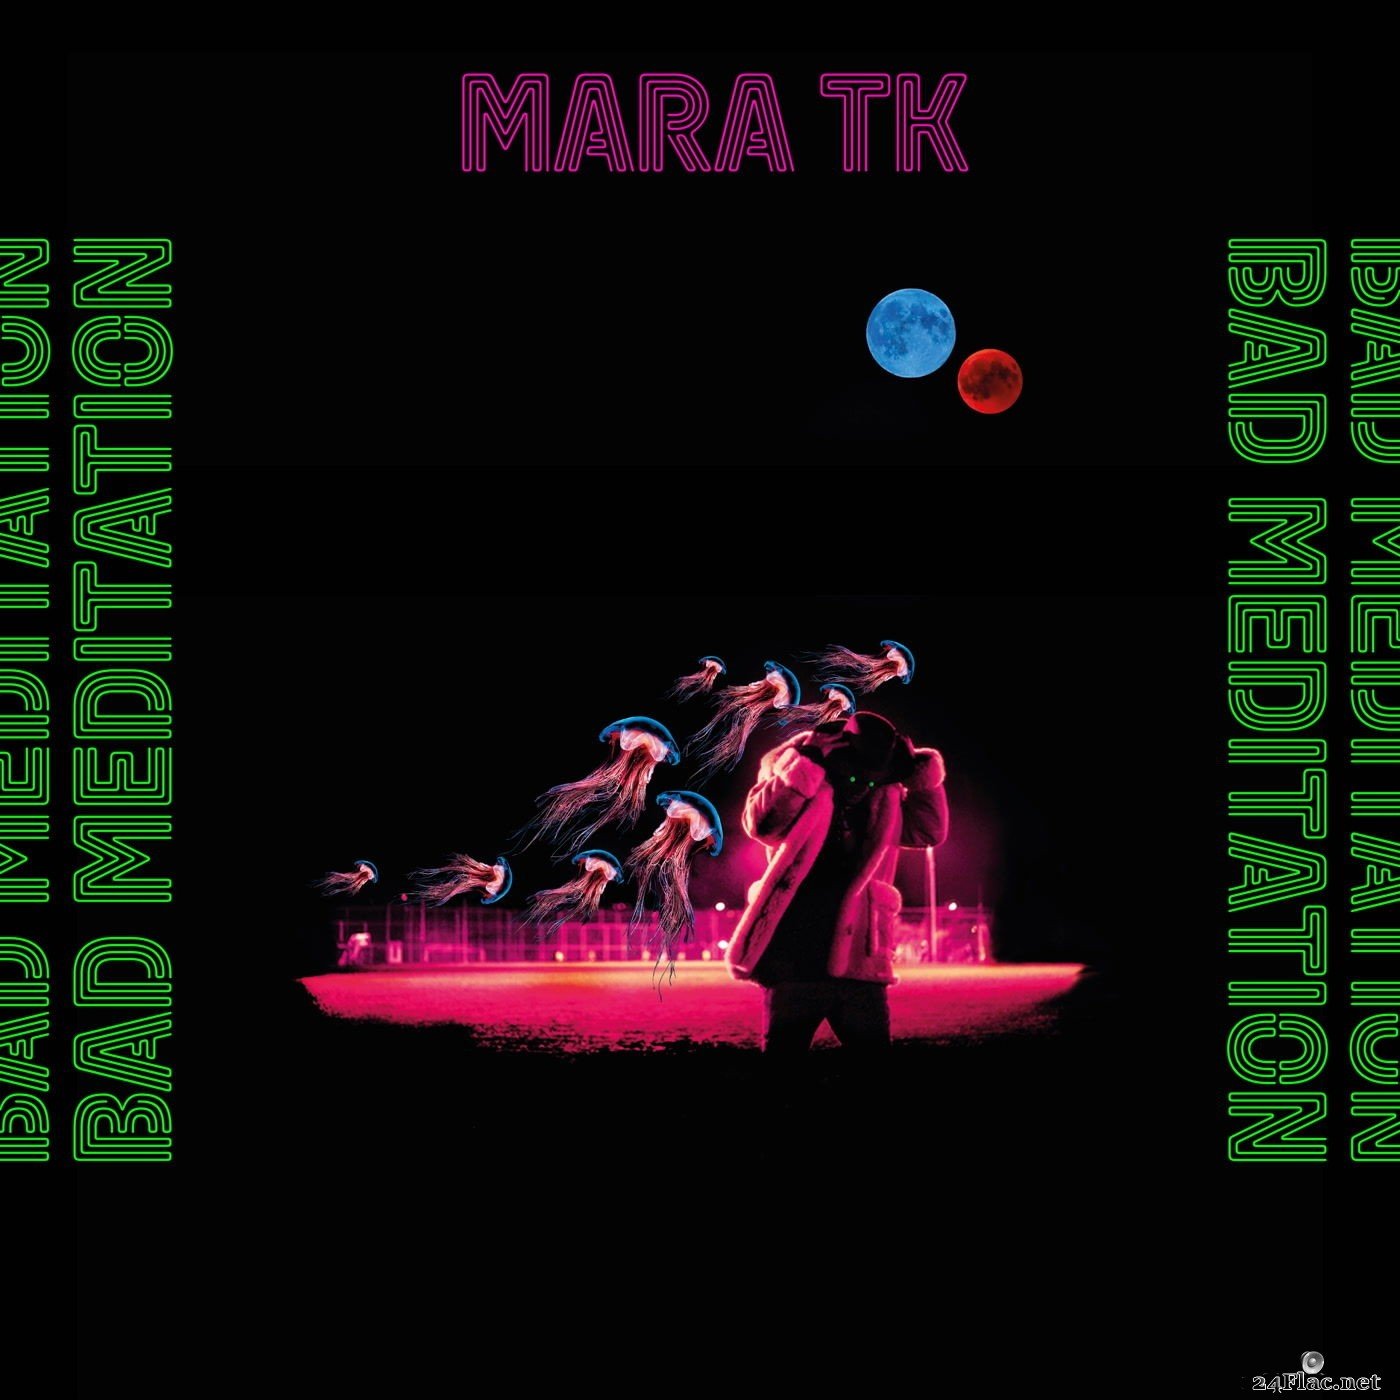 Mara TK - Bad Meditation (2021) Hi-Res